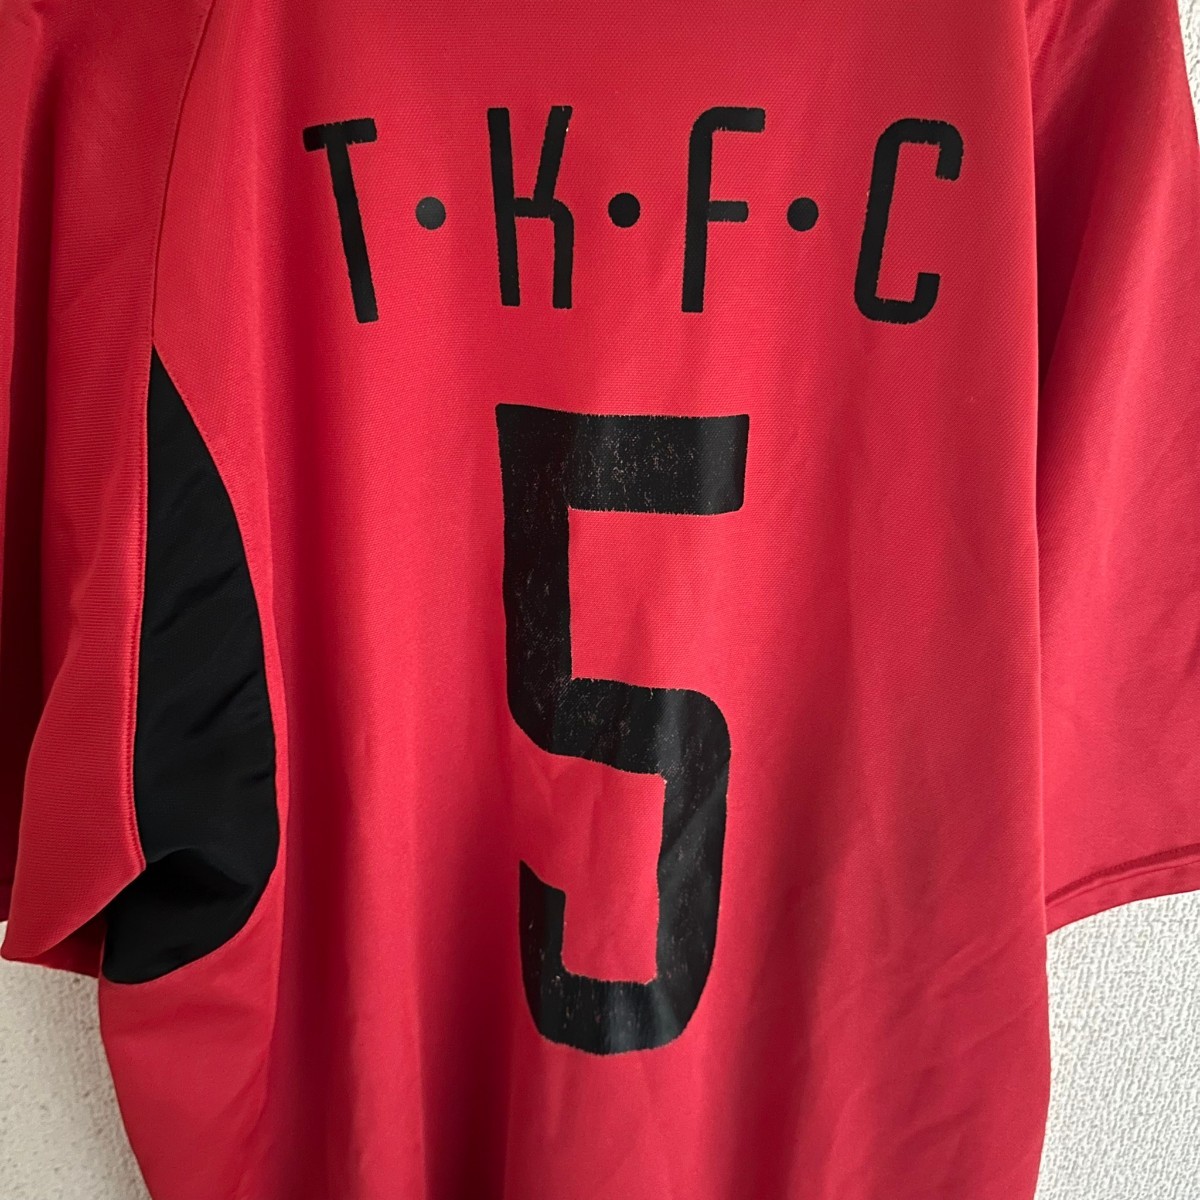 NIKE ナイキ ユニフォーム トップス スポーツウェア メンズ T.K.F.C ティーケーエフシー_画像5